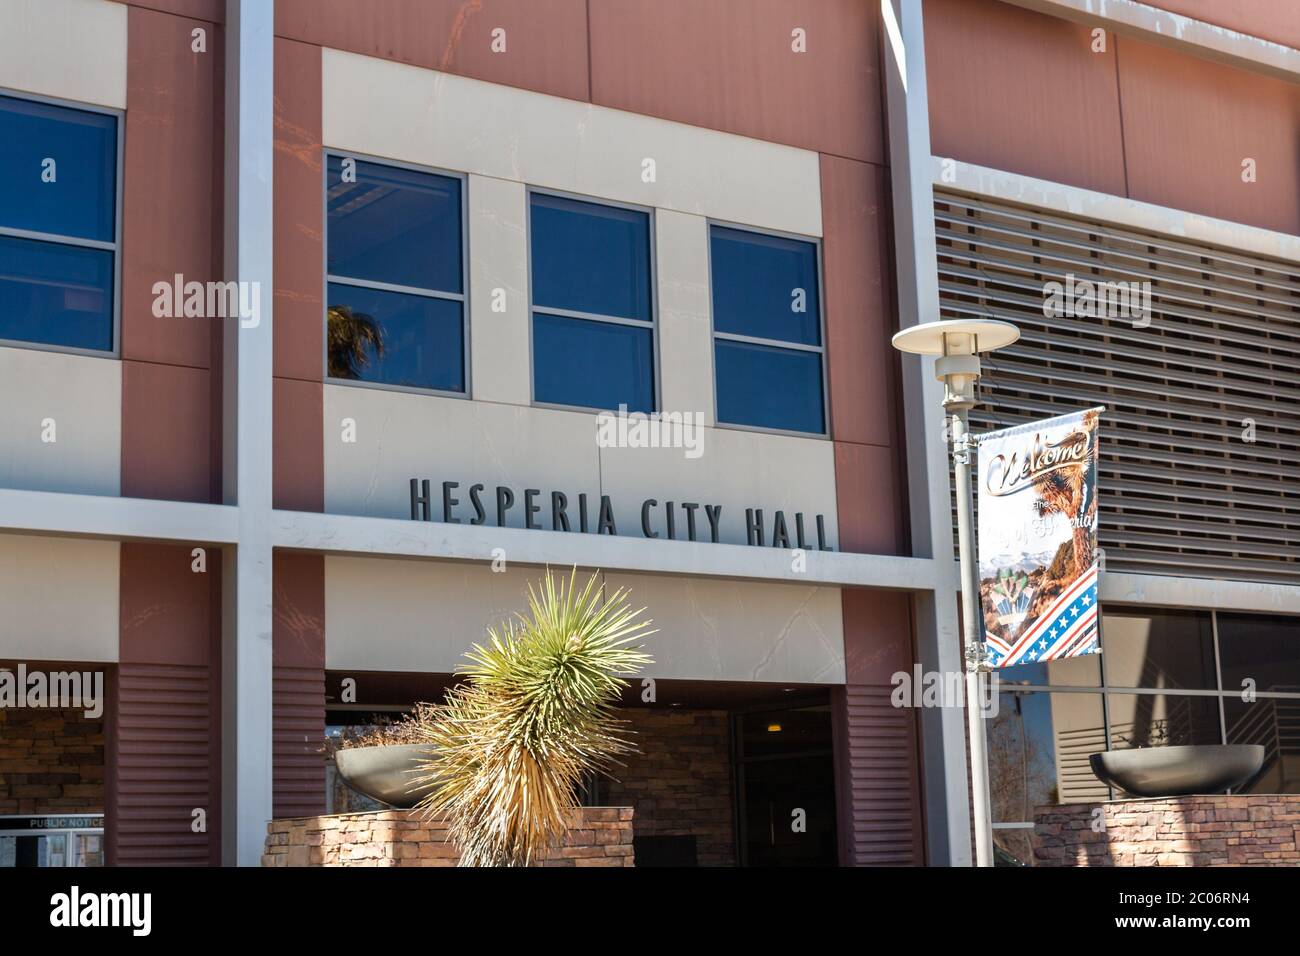 Hesperia, CA / USA - März 13 2019: Das Hesperia City Hall Bürogebäude befindet sich in der Seventh Ave 9700 in Hesperia, Kalifornien. Stockfoto